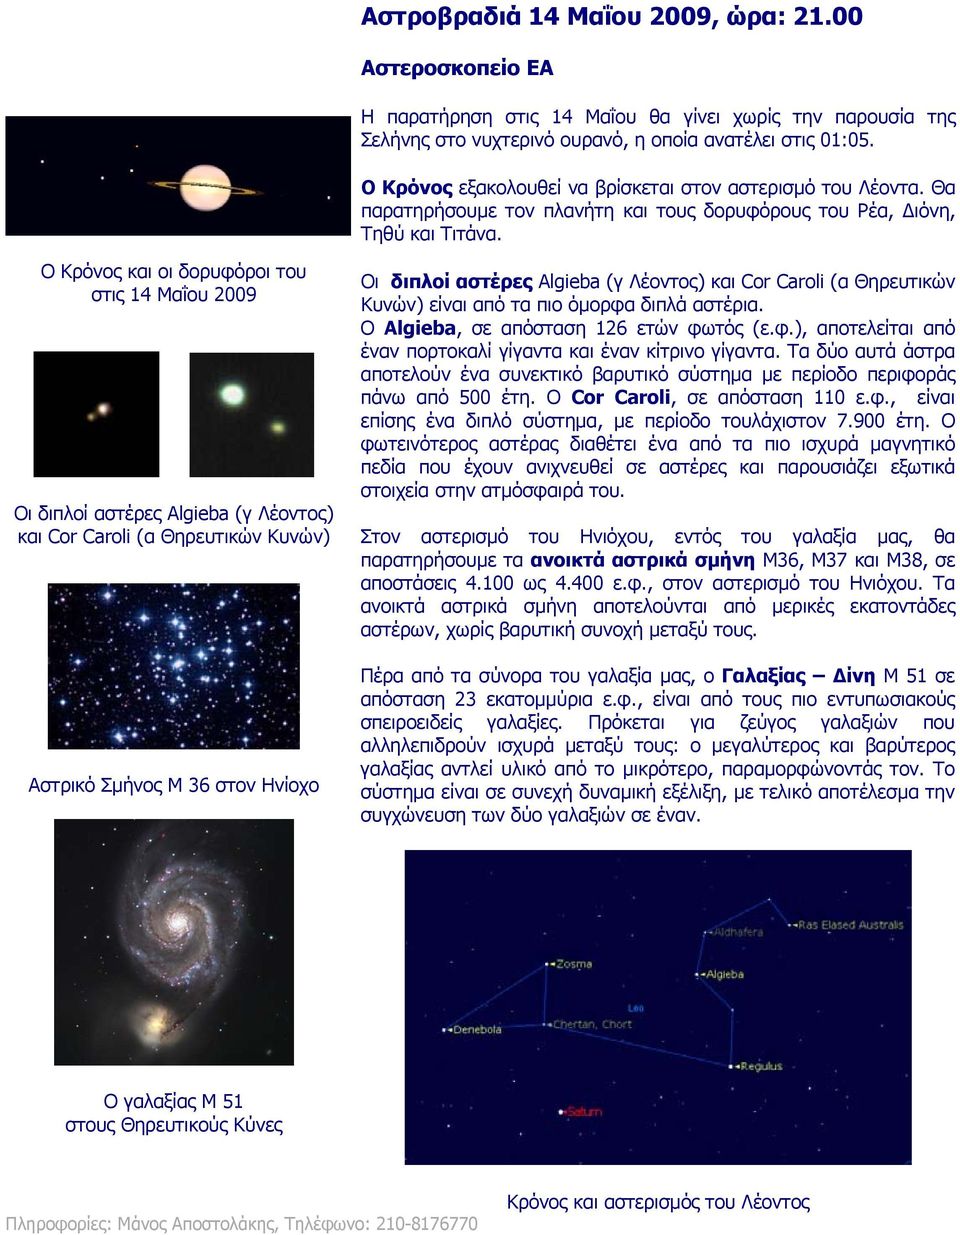 στις 14 Μαΐου 2009 Οι διπλοί αστέρες Algieba (γ Λέοντος) και Cor Caroli (α Θηρευτικών Κυνών) Αστρικό Σμήνος M 36 στον Ηνίοχο Οι διπλοί αστέρες Algieba (γ Λέοντος) και Cor Caroli (α Θηρευτικών Κυνών)